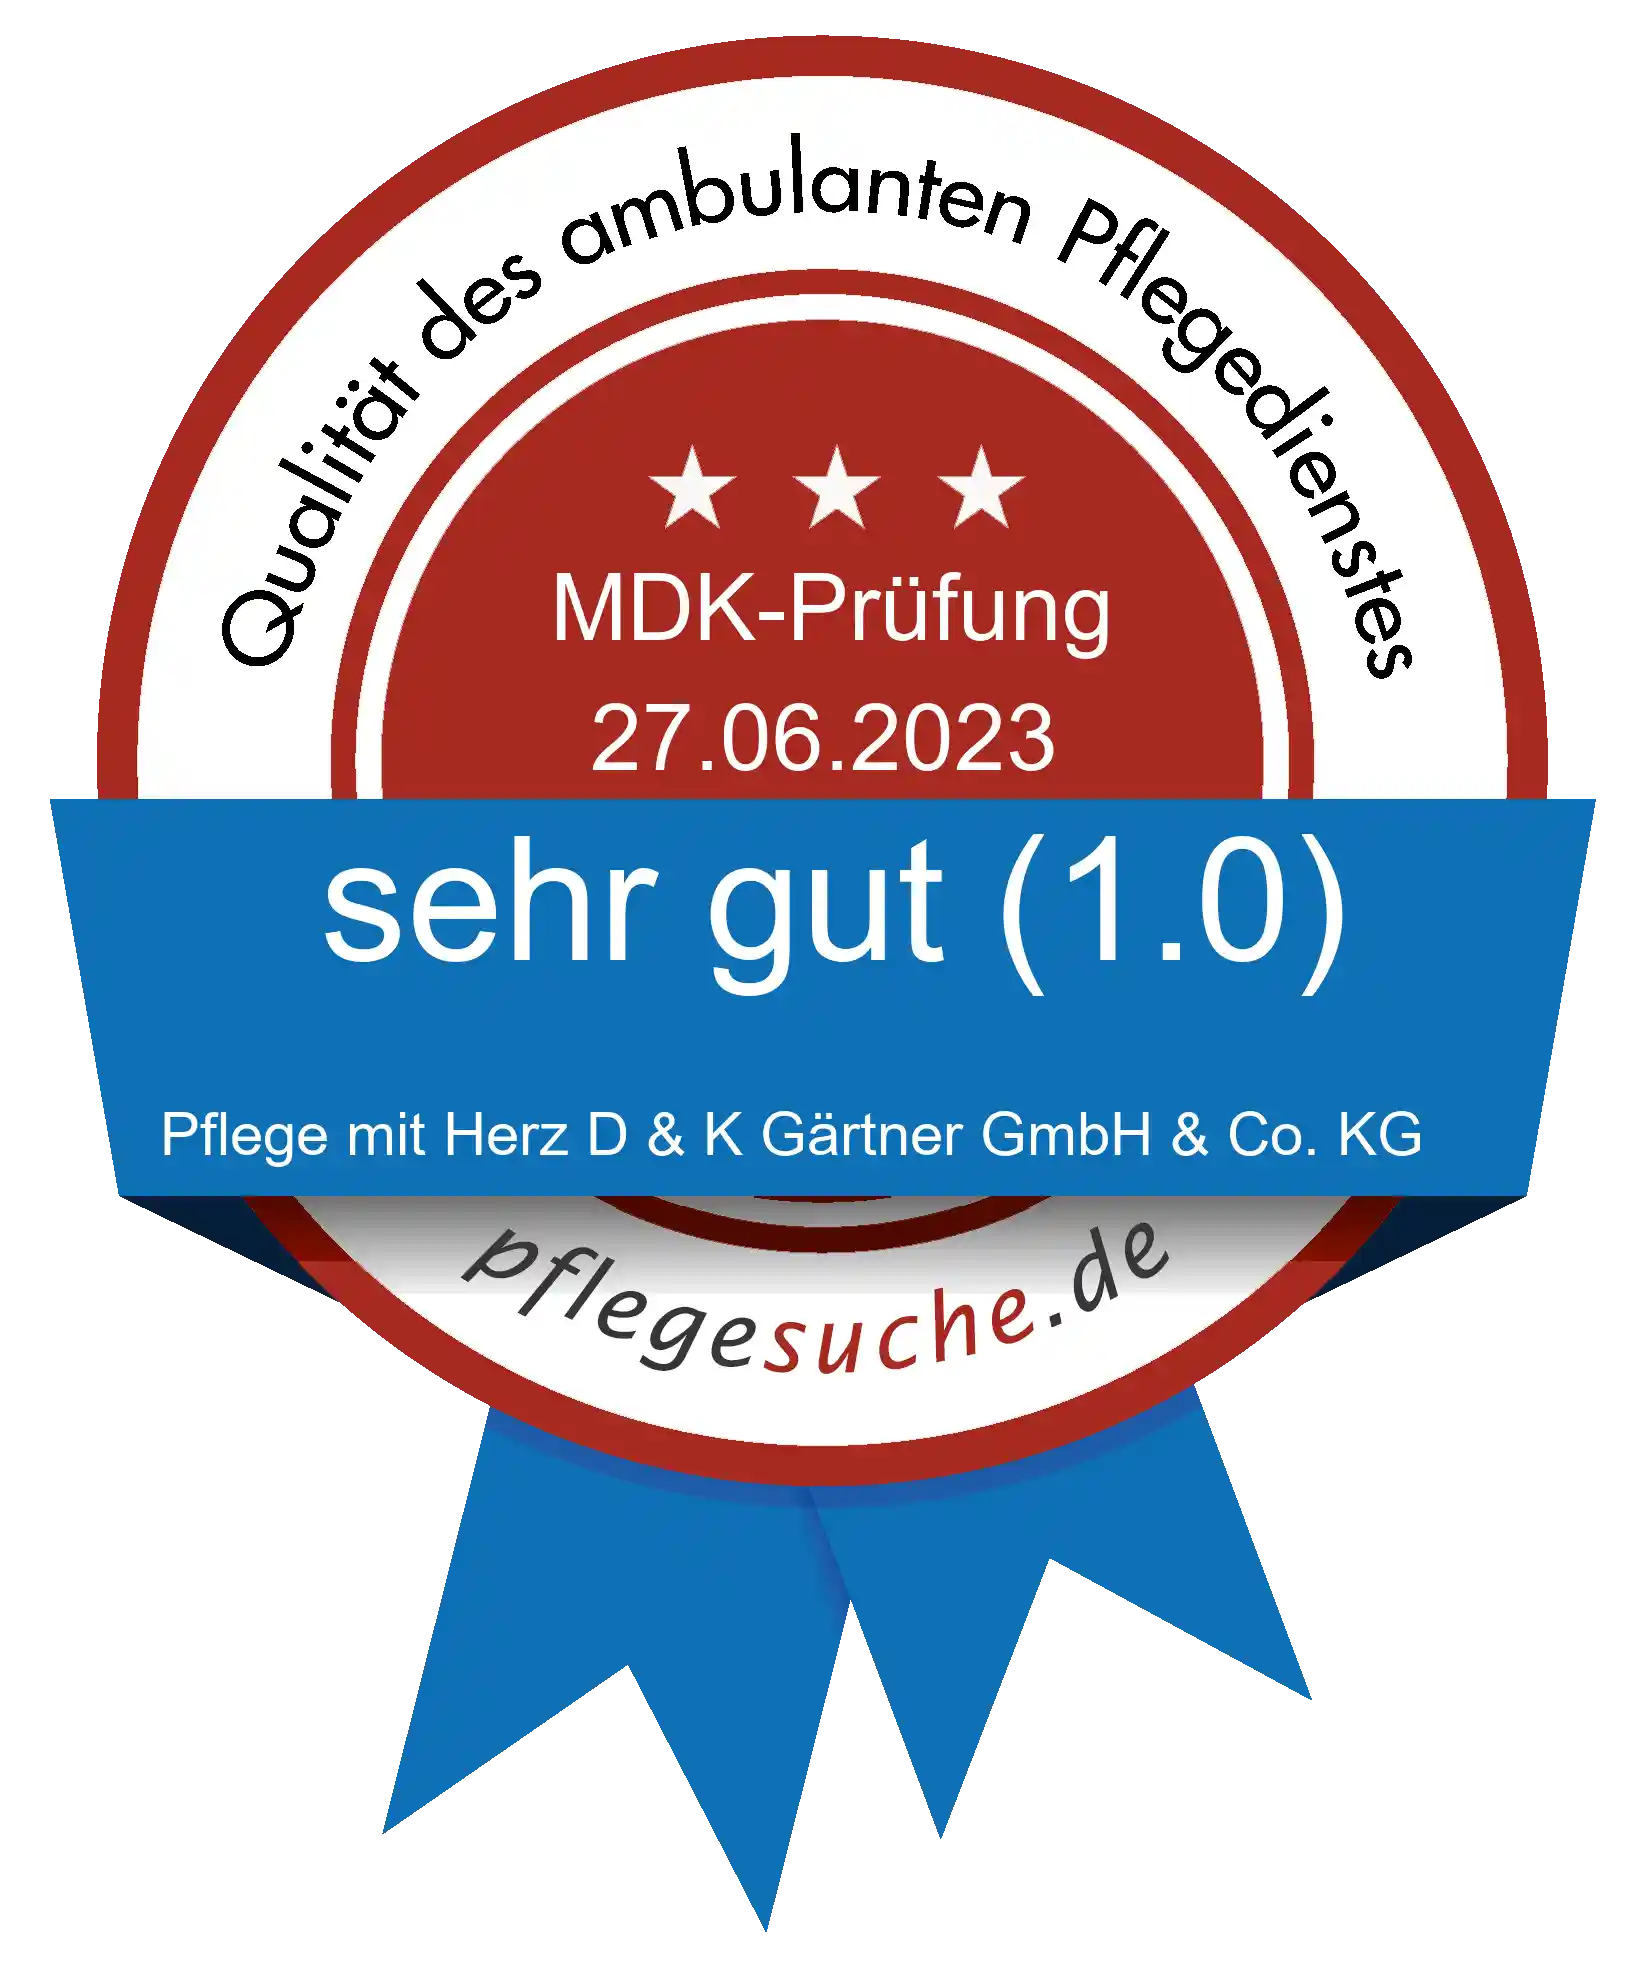 Siegel Benotung: Pflege mit Herz D & K Gärtner GmbH & Co. KG